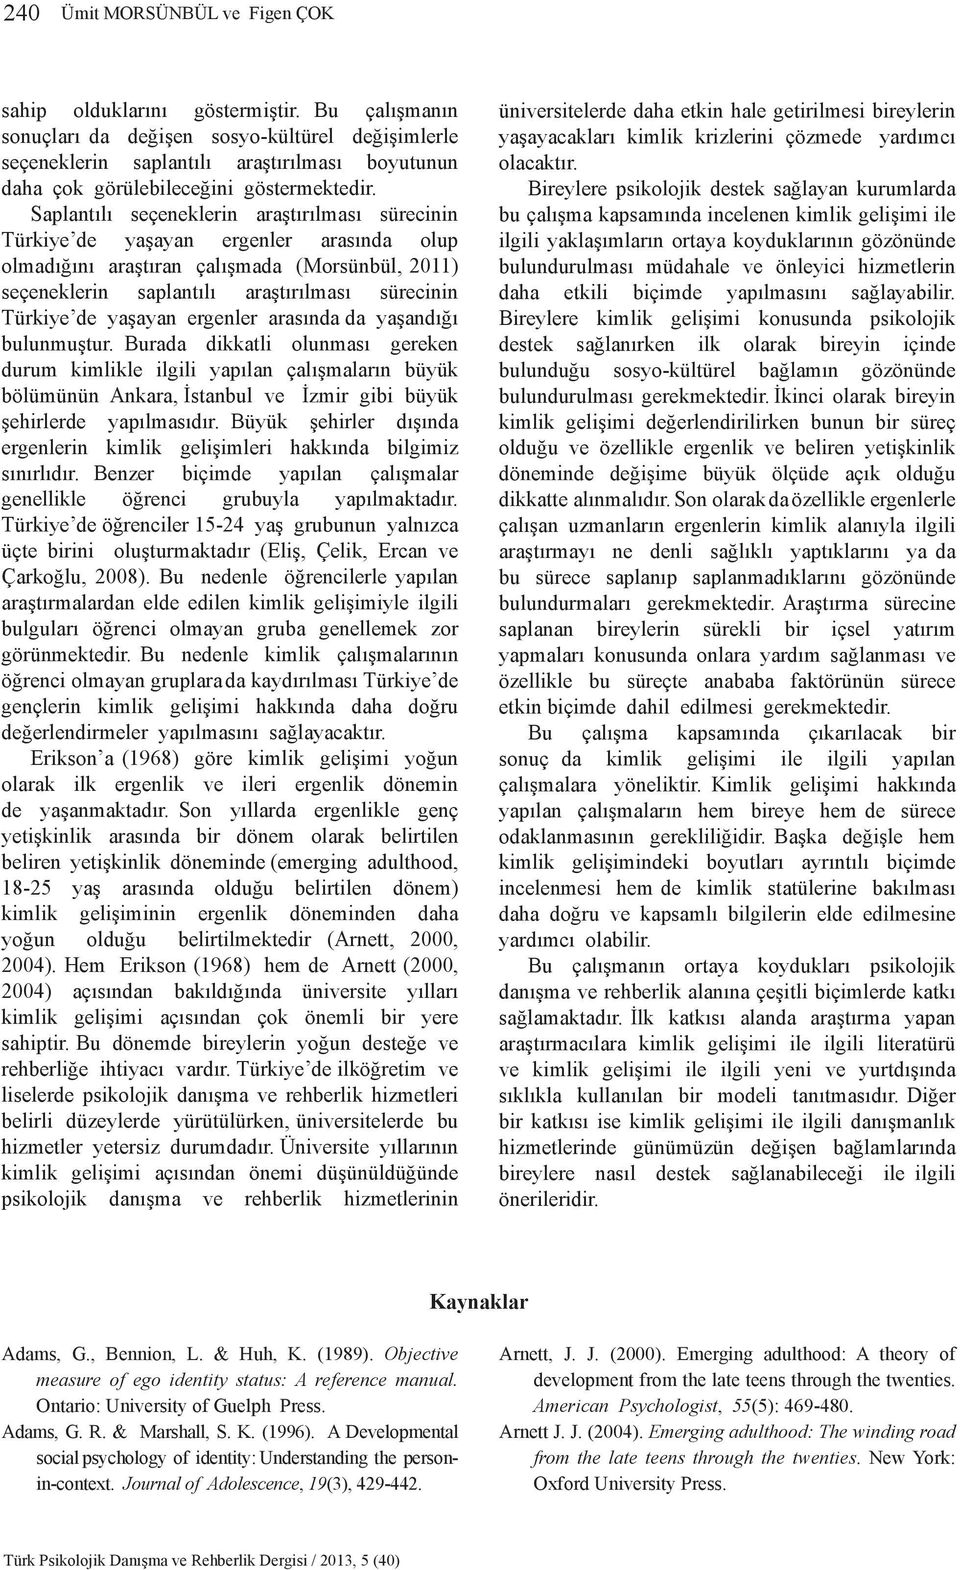 Saplantılı seçeneklerin araştırılması sürecinin Türkiye de yaşayan ergenler arasında olup olmadığını araştıran çalışmada (Morsünbül, 2011) seçeneklerin saplantılı araştırılması sürecinin Türkiye de